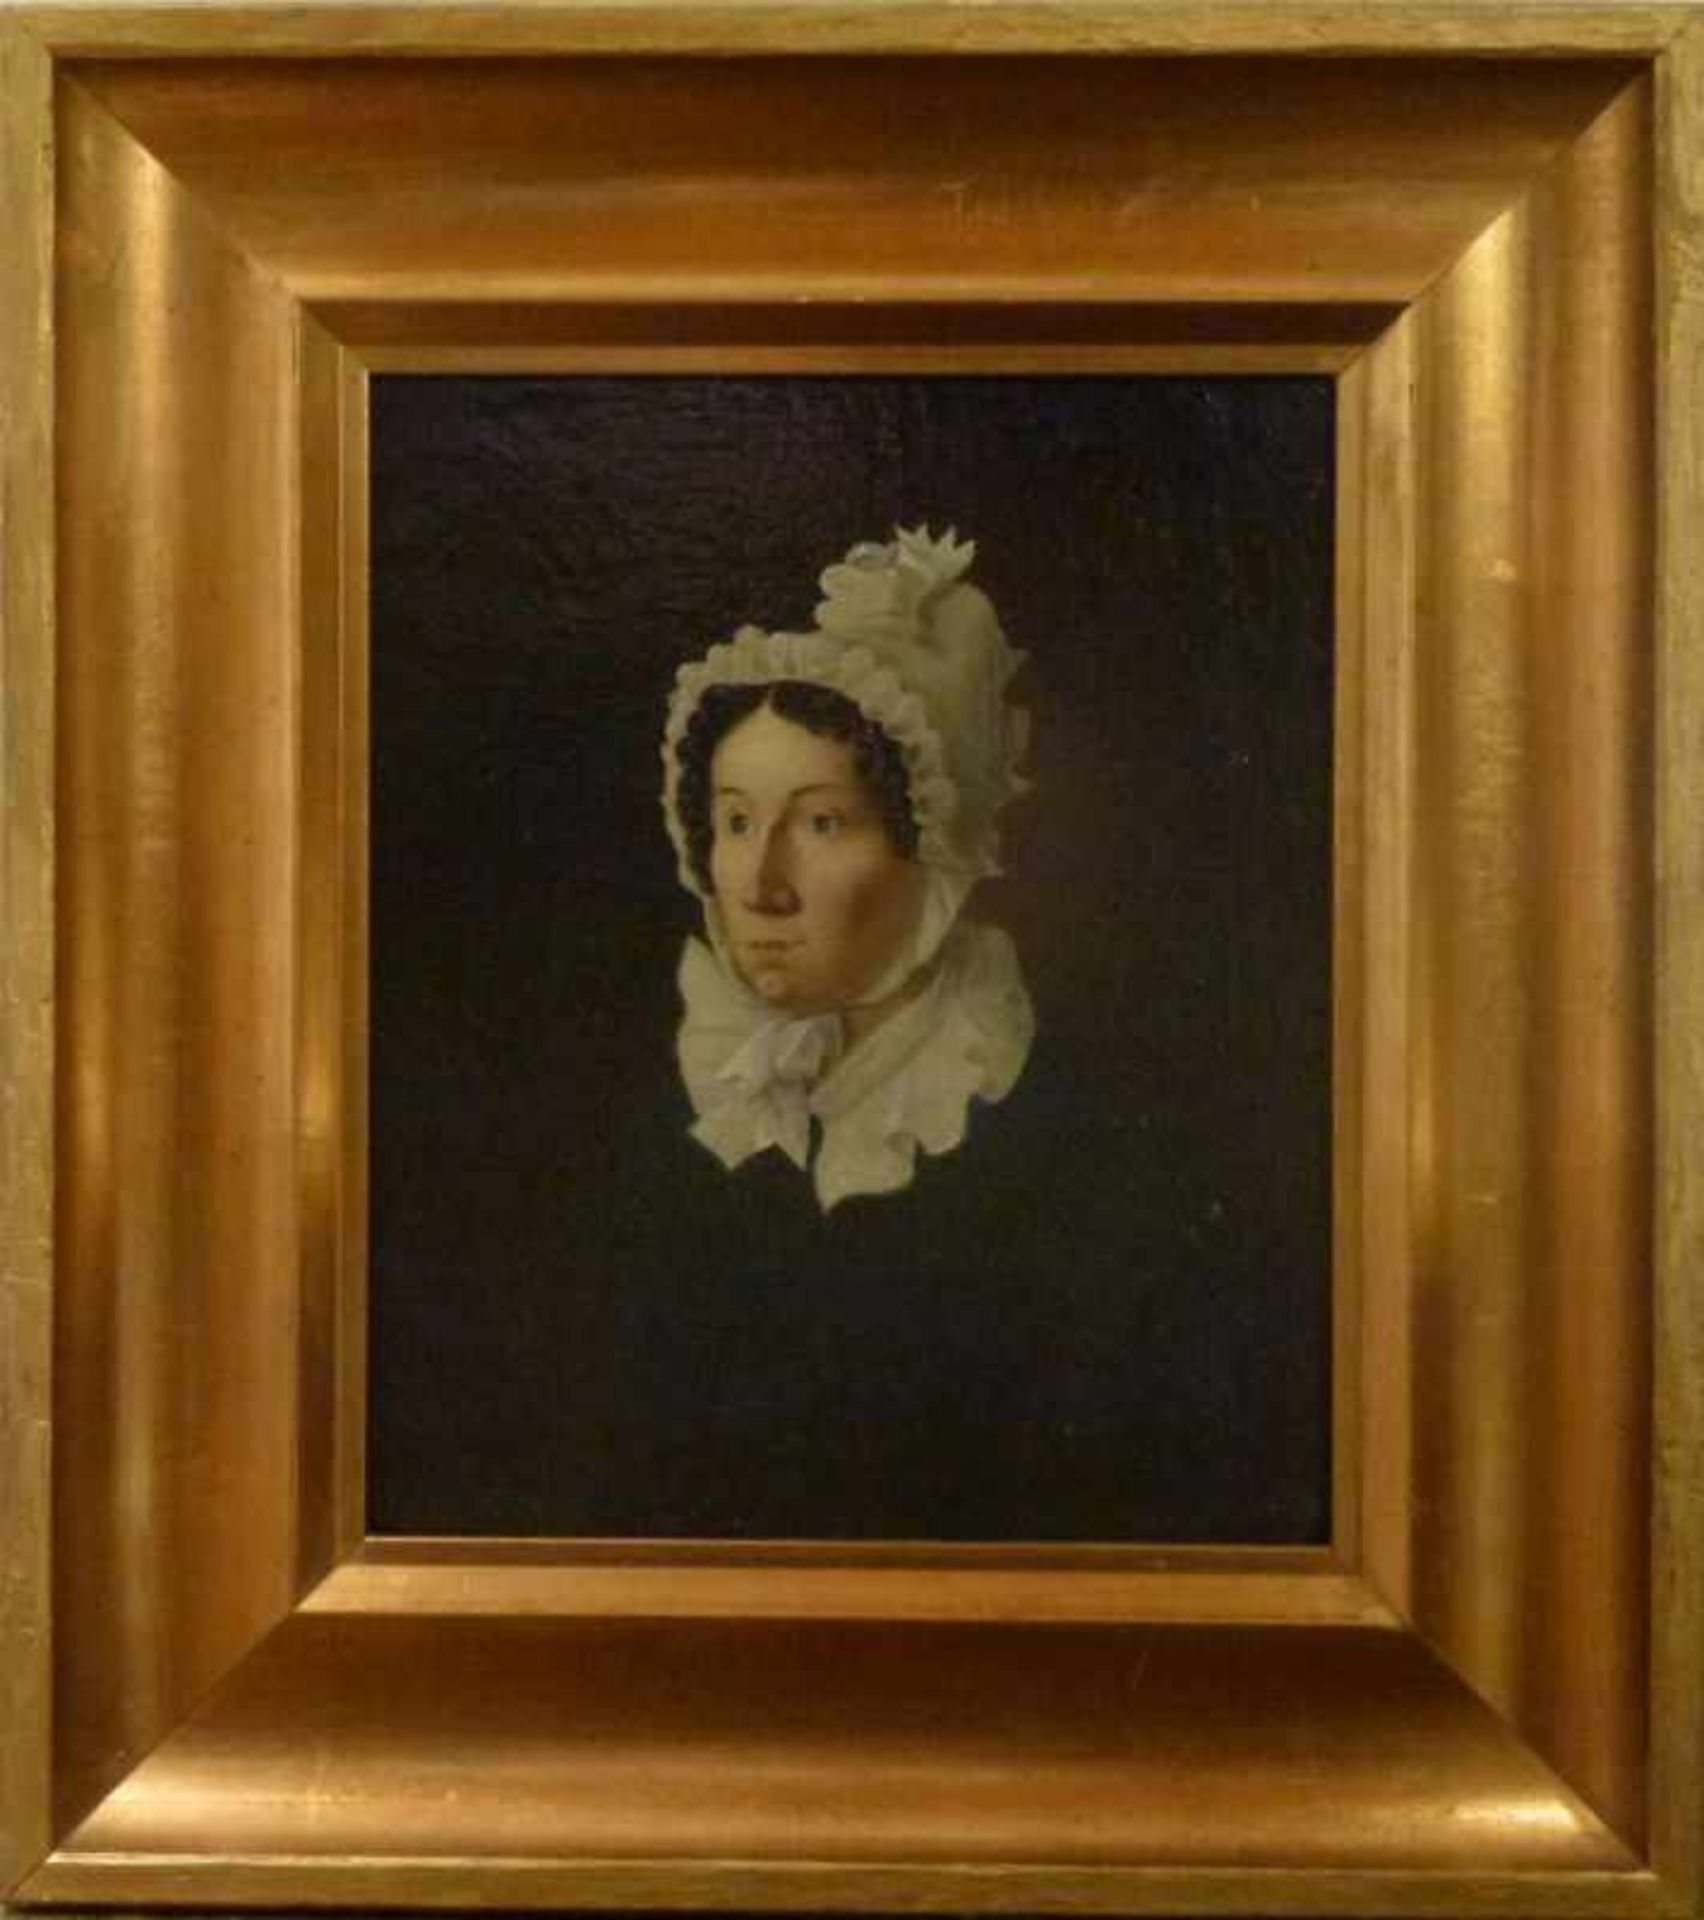 Portrait einer Dame, 1849 Öl/Lw, sign.: E.Meuten? Biedermeierdame in Rüschenhaube undKragen, GR, - Bild 2 aus 2